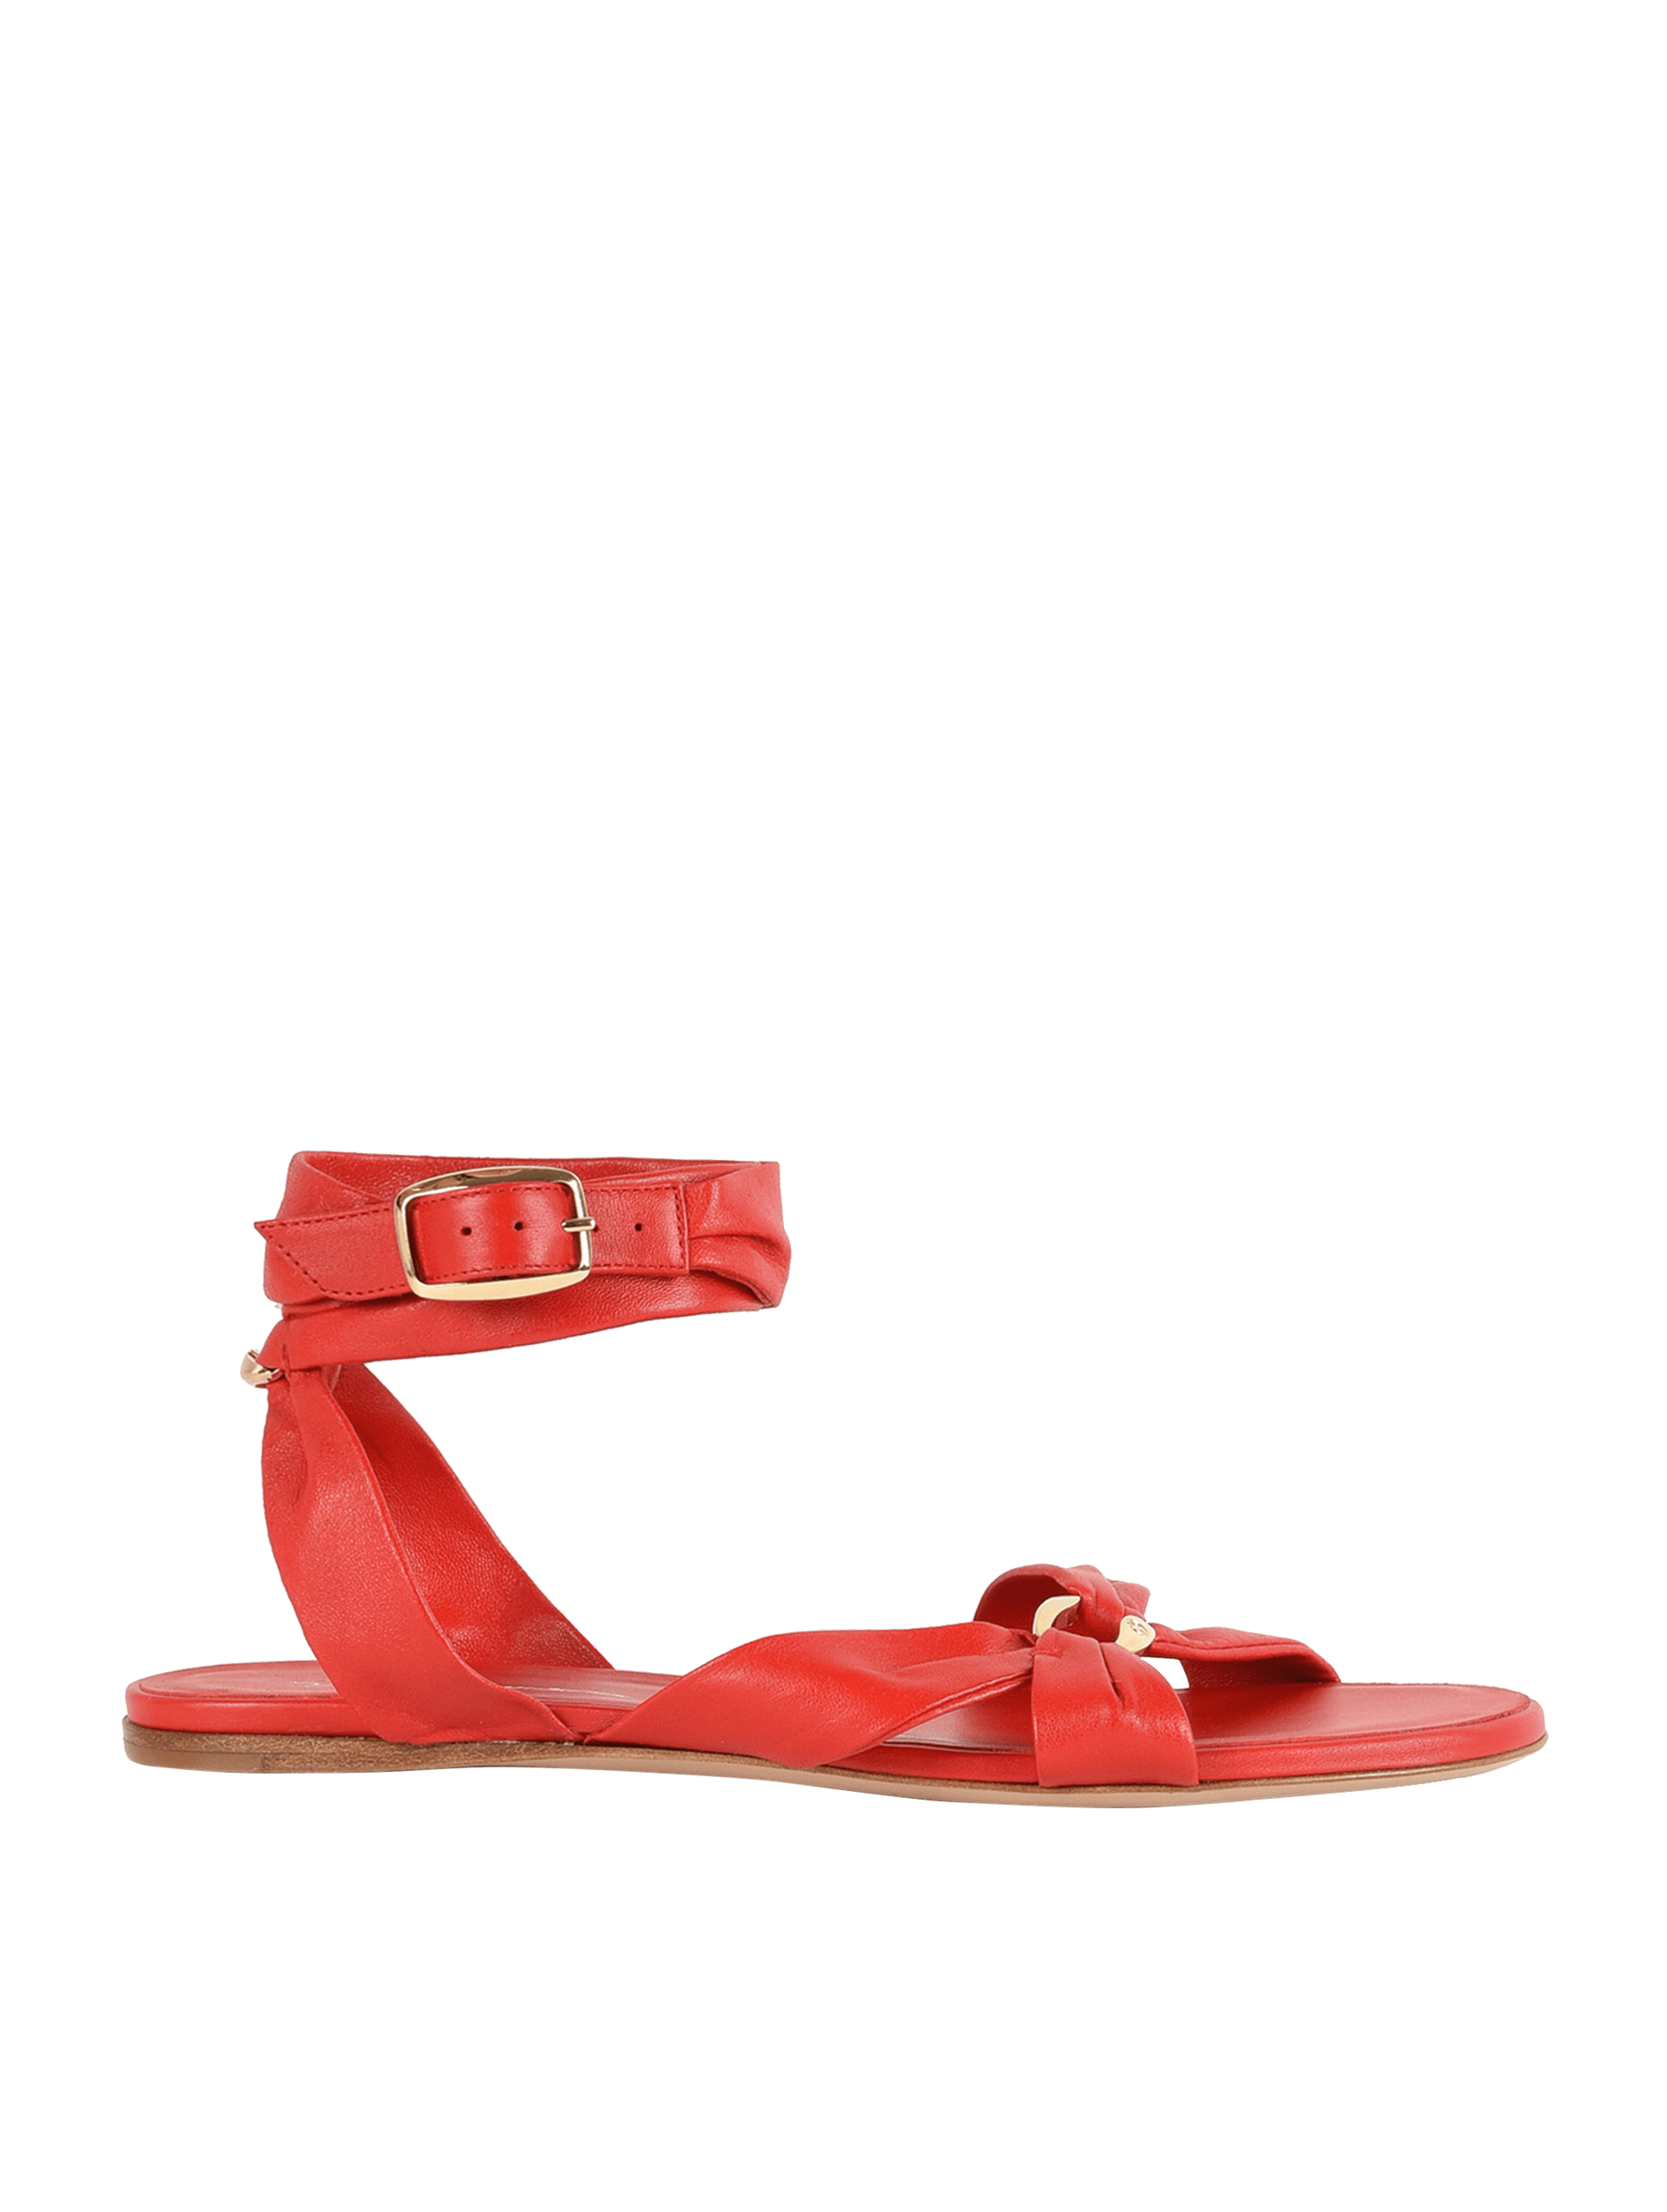 Sandália de Couro com Detalhes de Metal Vermelha